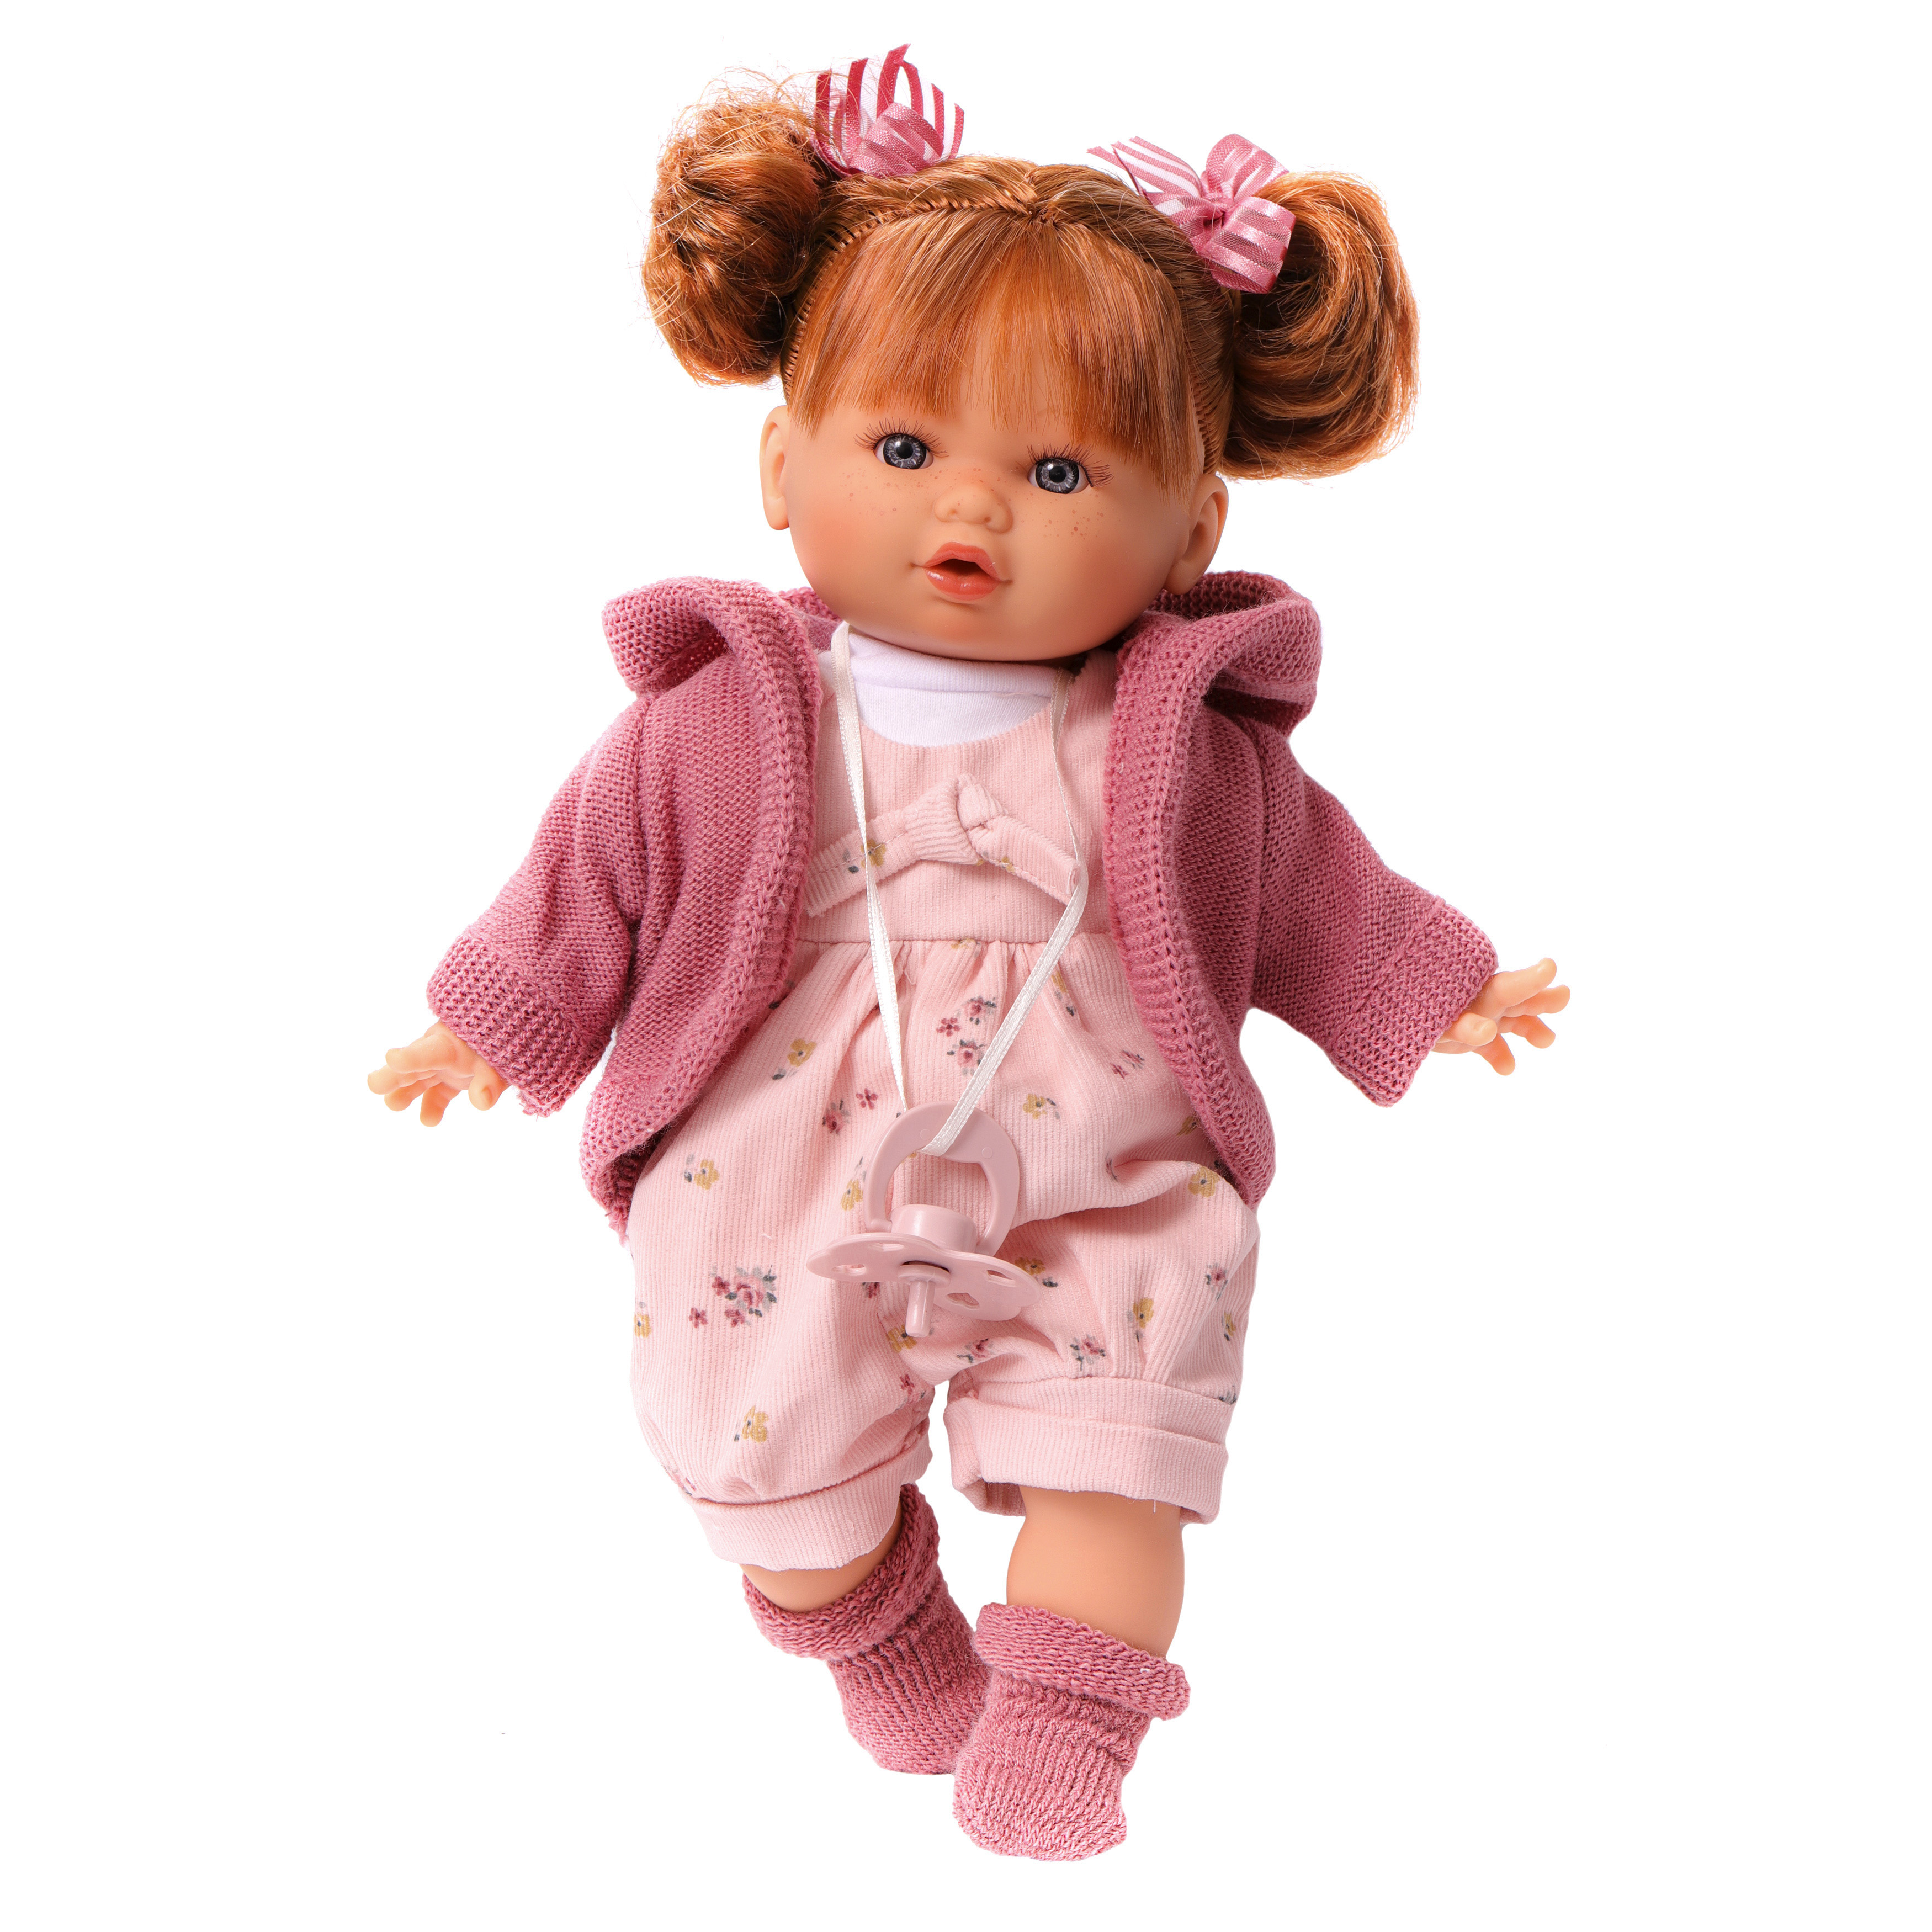 Кукла говорящая Antonio Juan Оливия в розовом, 30 см, плачет, мягконабивная 13144 munecas antonio juan кукла азалия озвученная 27 см 1222